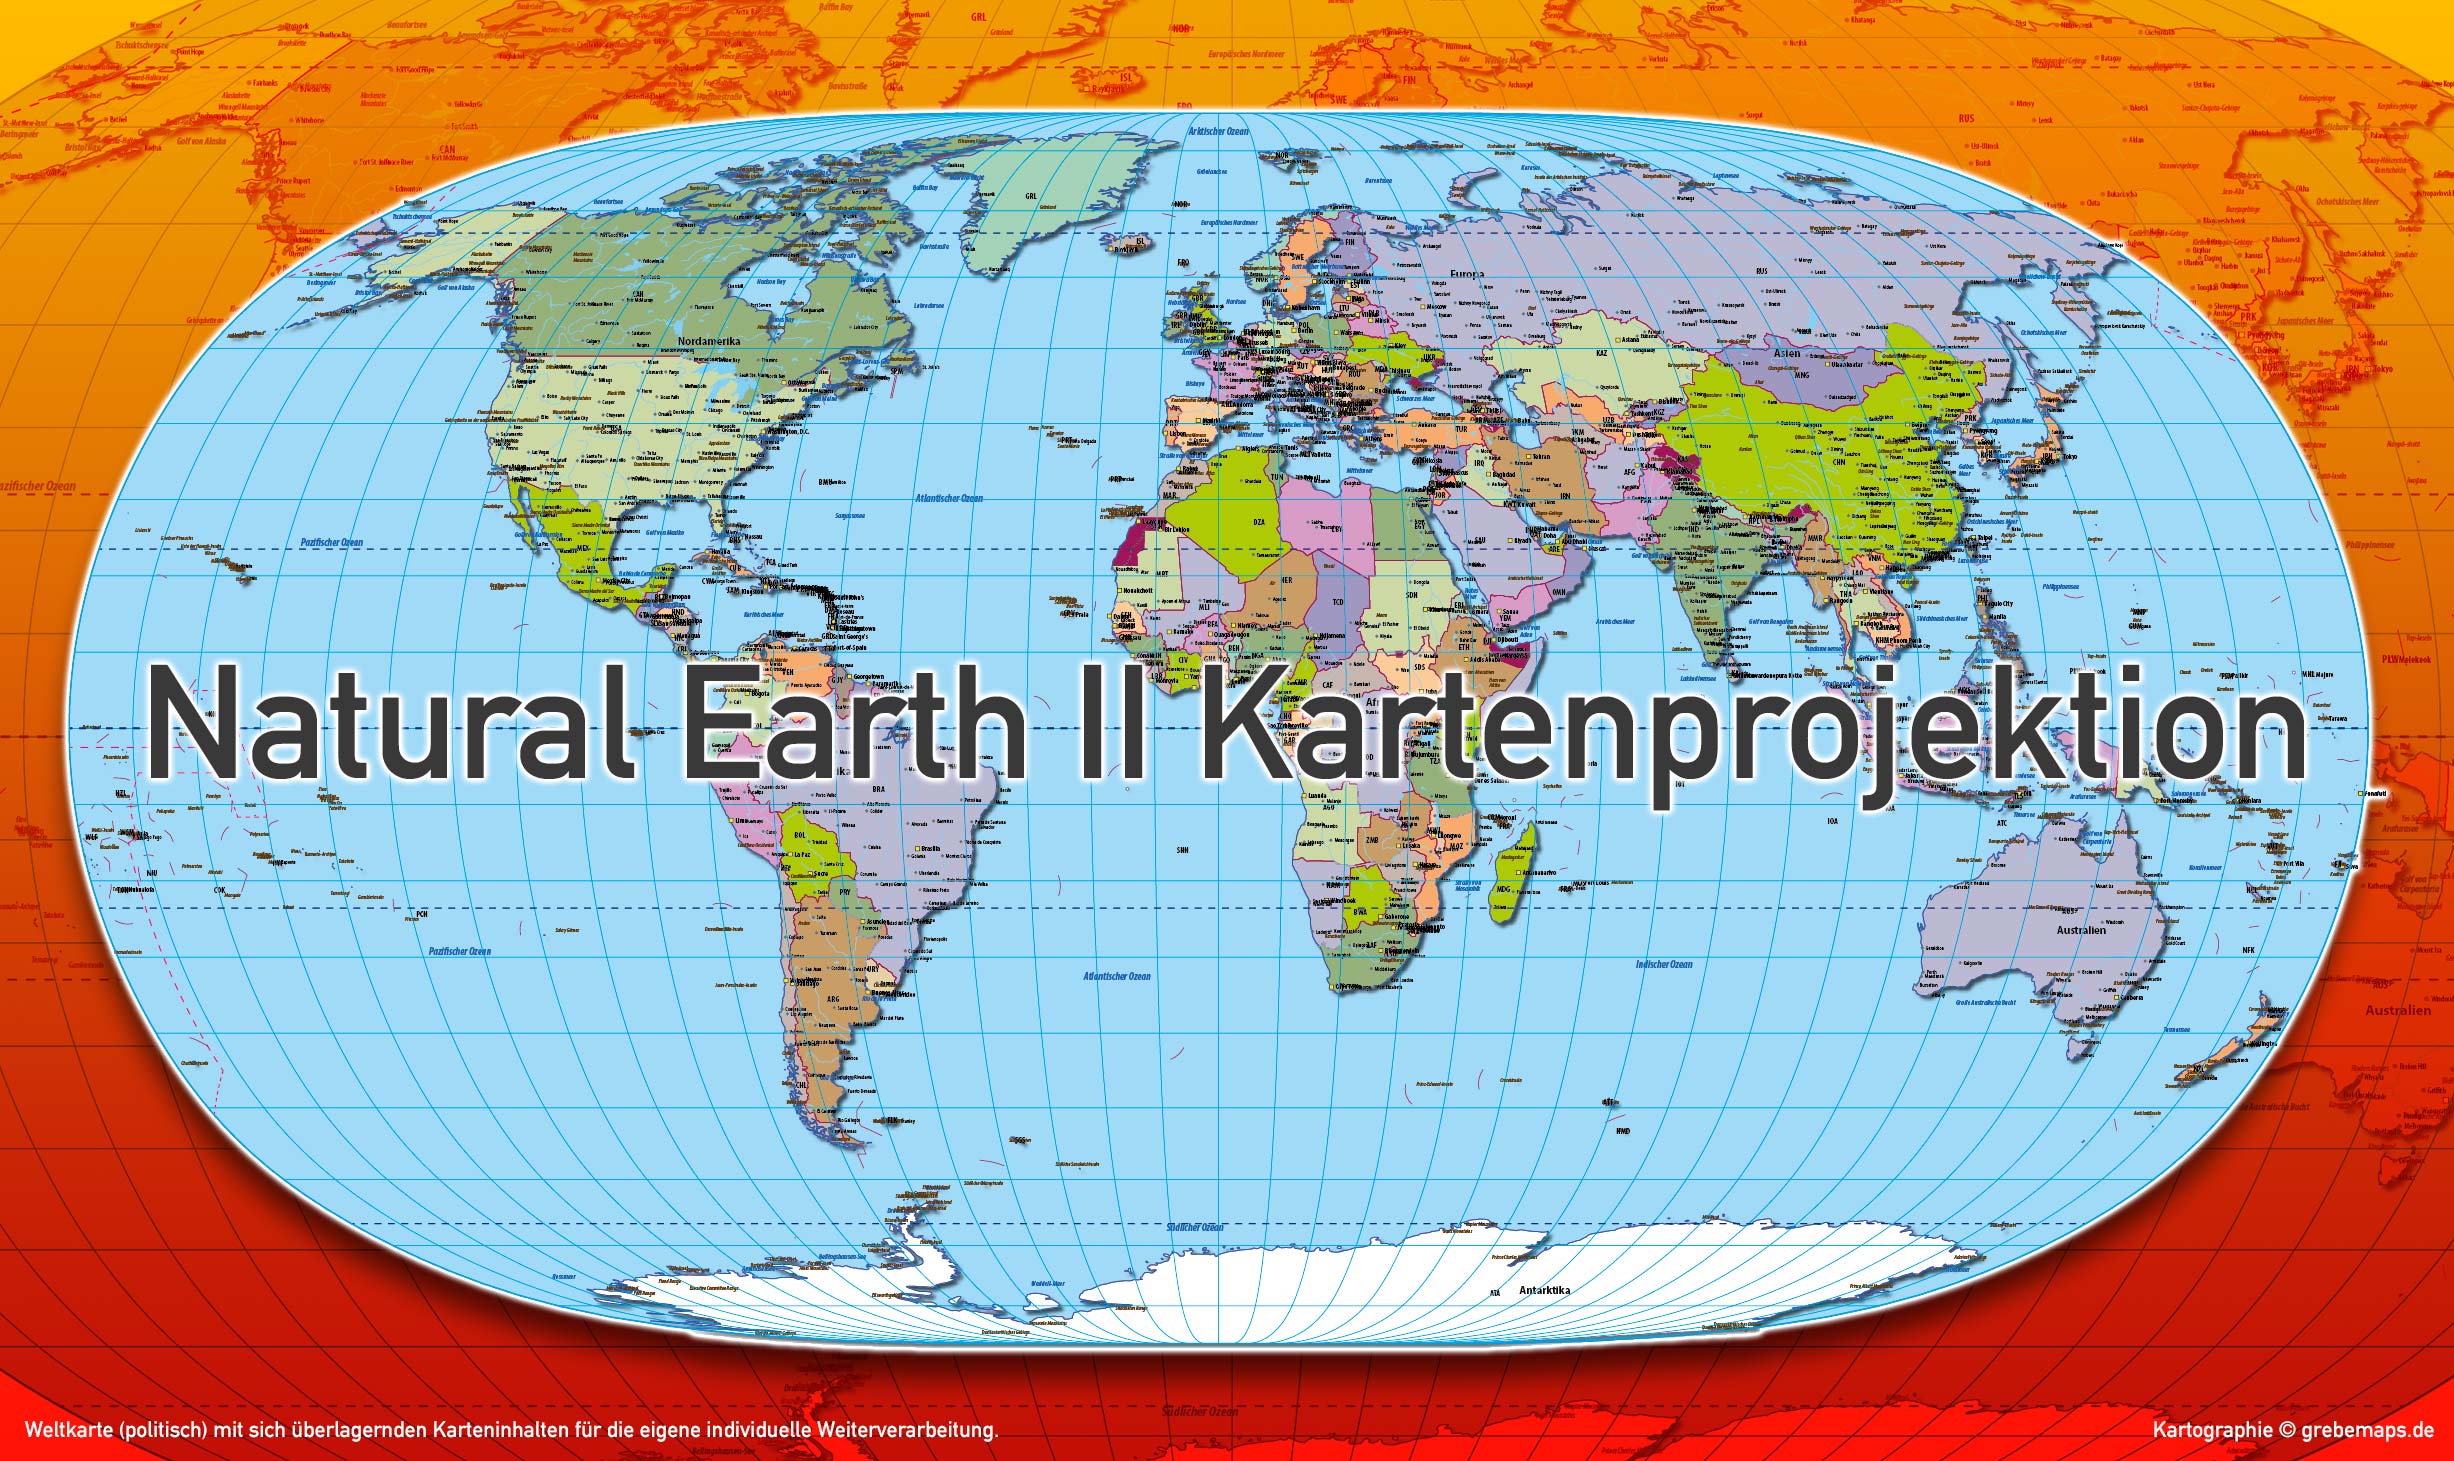 Weltkarte politisch - Natural Earth II Kartenprojektion - ebenen-separierte editierbare Vektorkarte für Illustrator zum Download, Vektorgrafik Welt, Weltkarte Vektor download, vector map, editierbare Weltkarte